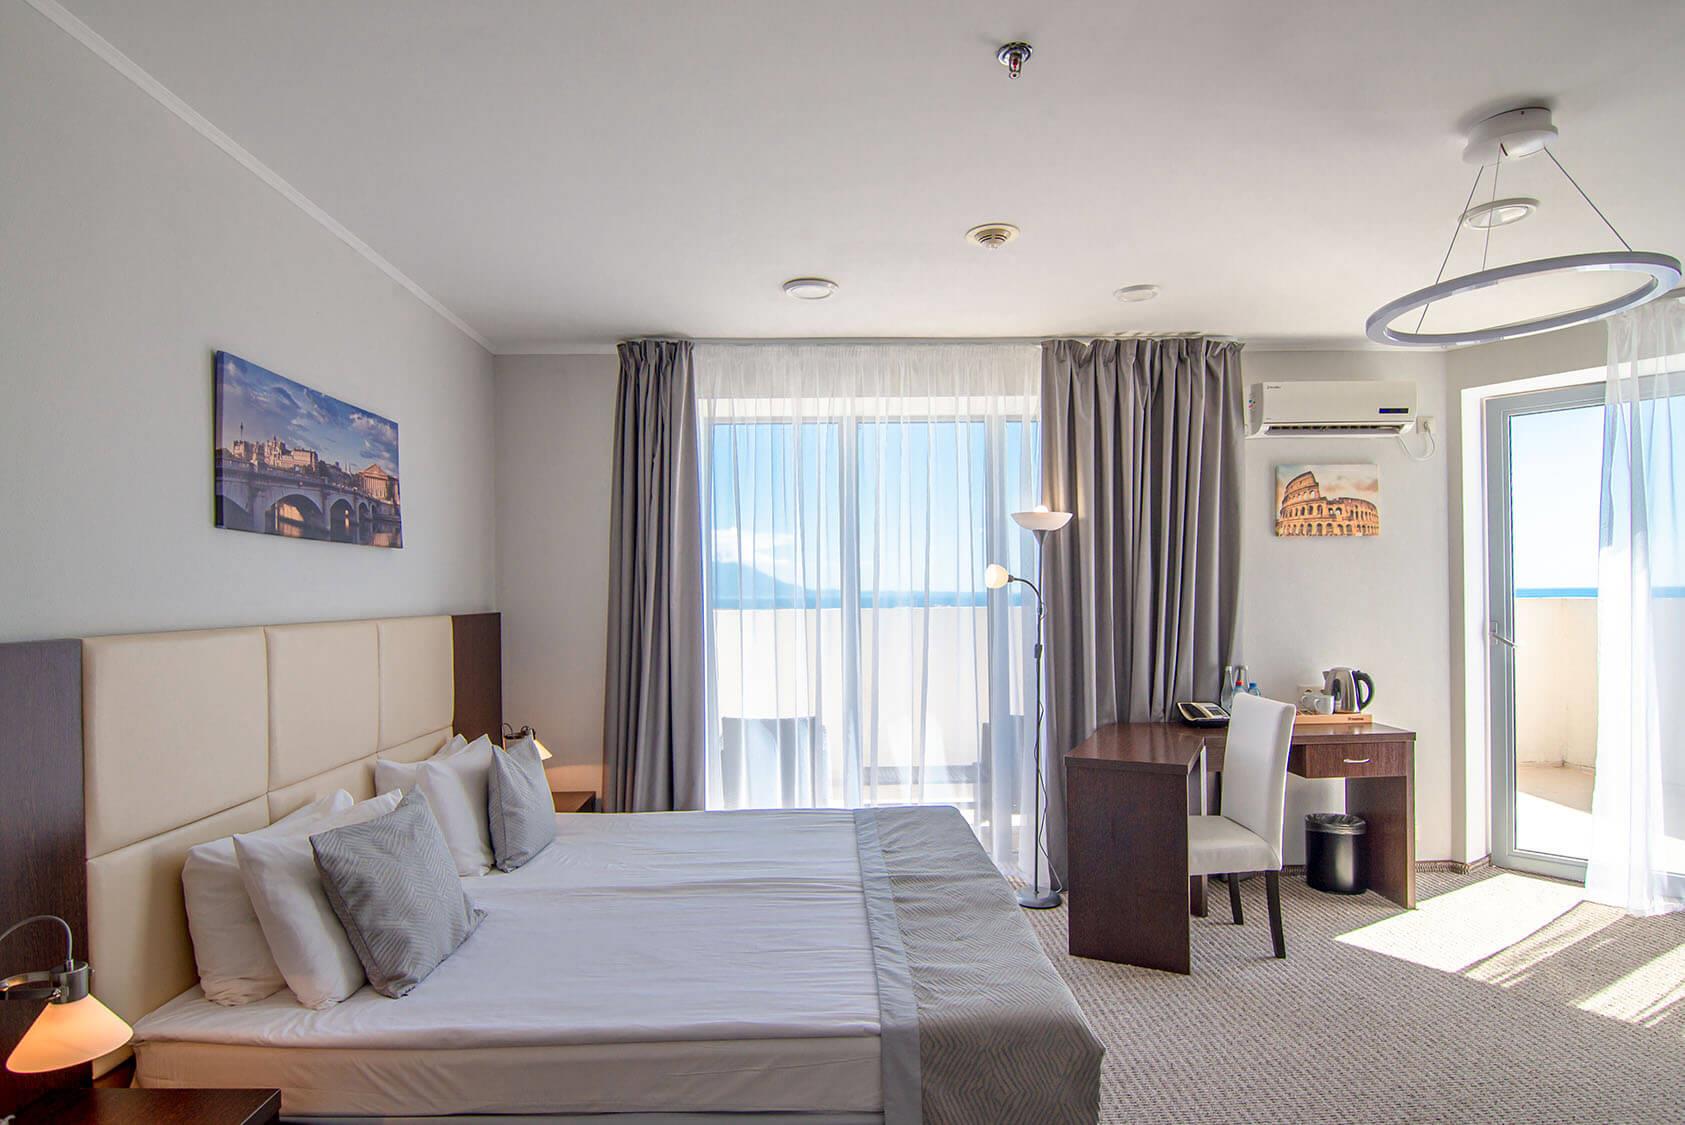 Ozkaymak Falez Hotel 5* (Анталья, Турция) - цены, отзывы, фото, бронирование - ПАКС